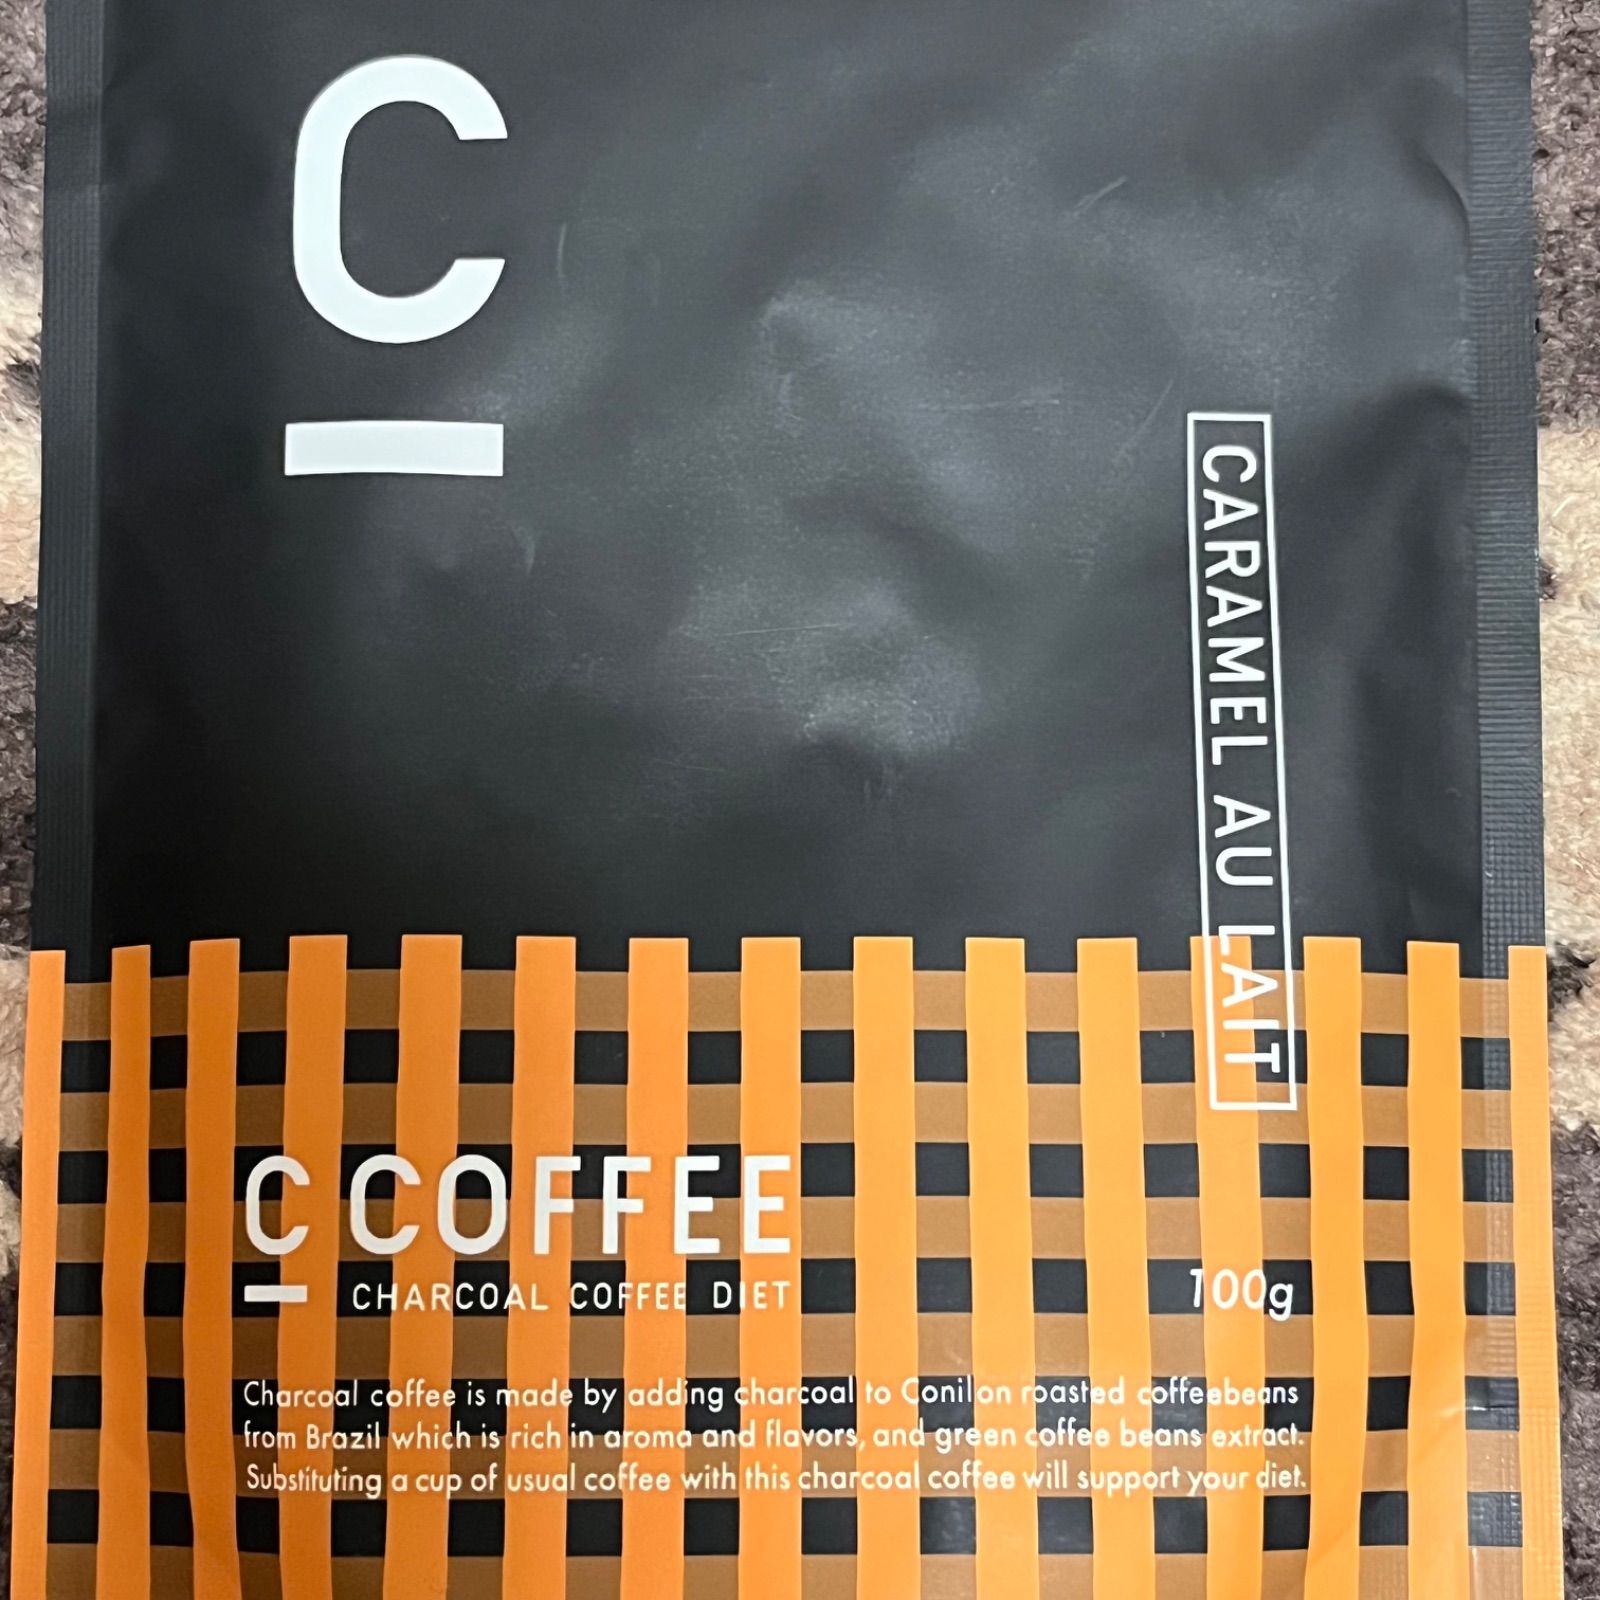 計4袋】C COFFEE チャコールコーヒーダイエット キャラメルオレ 2袋 ...